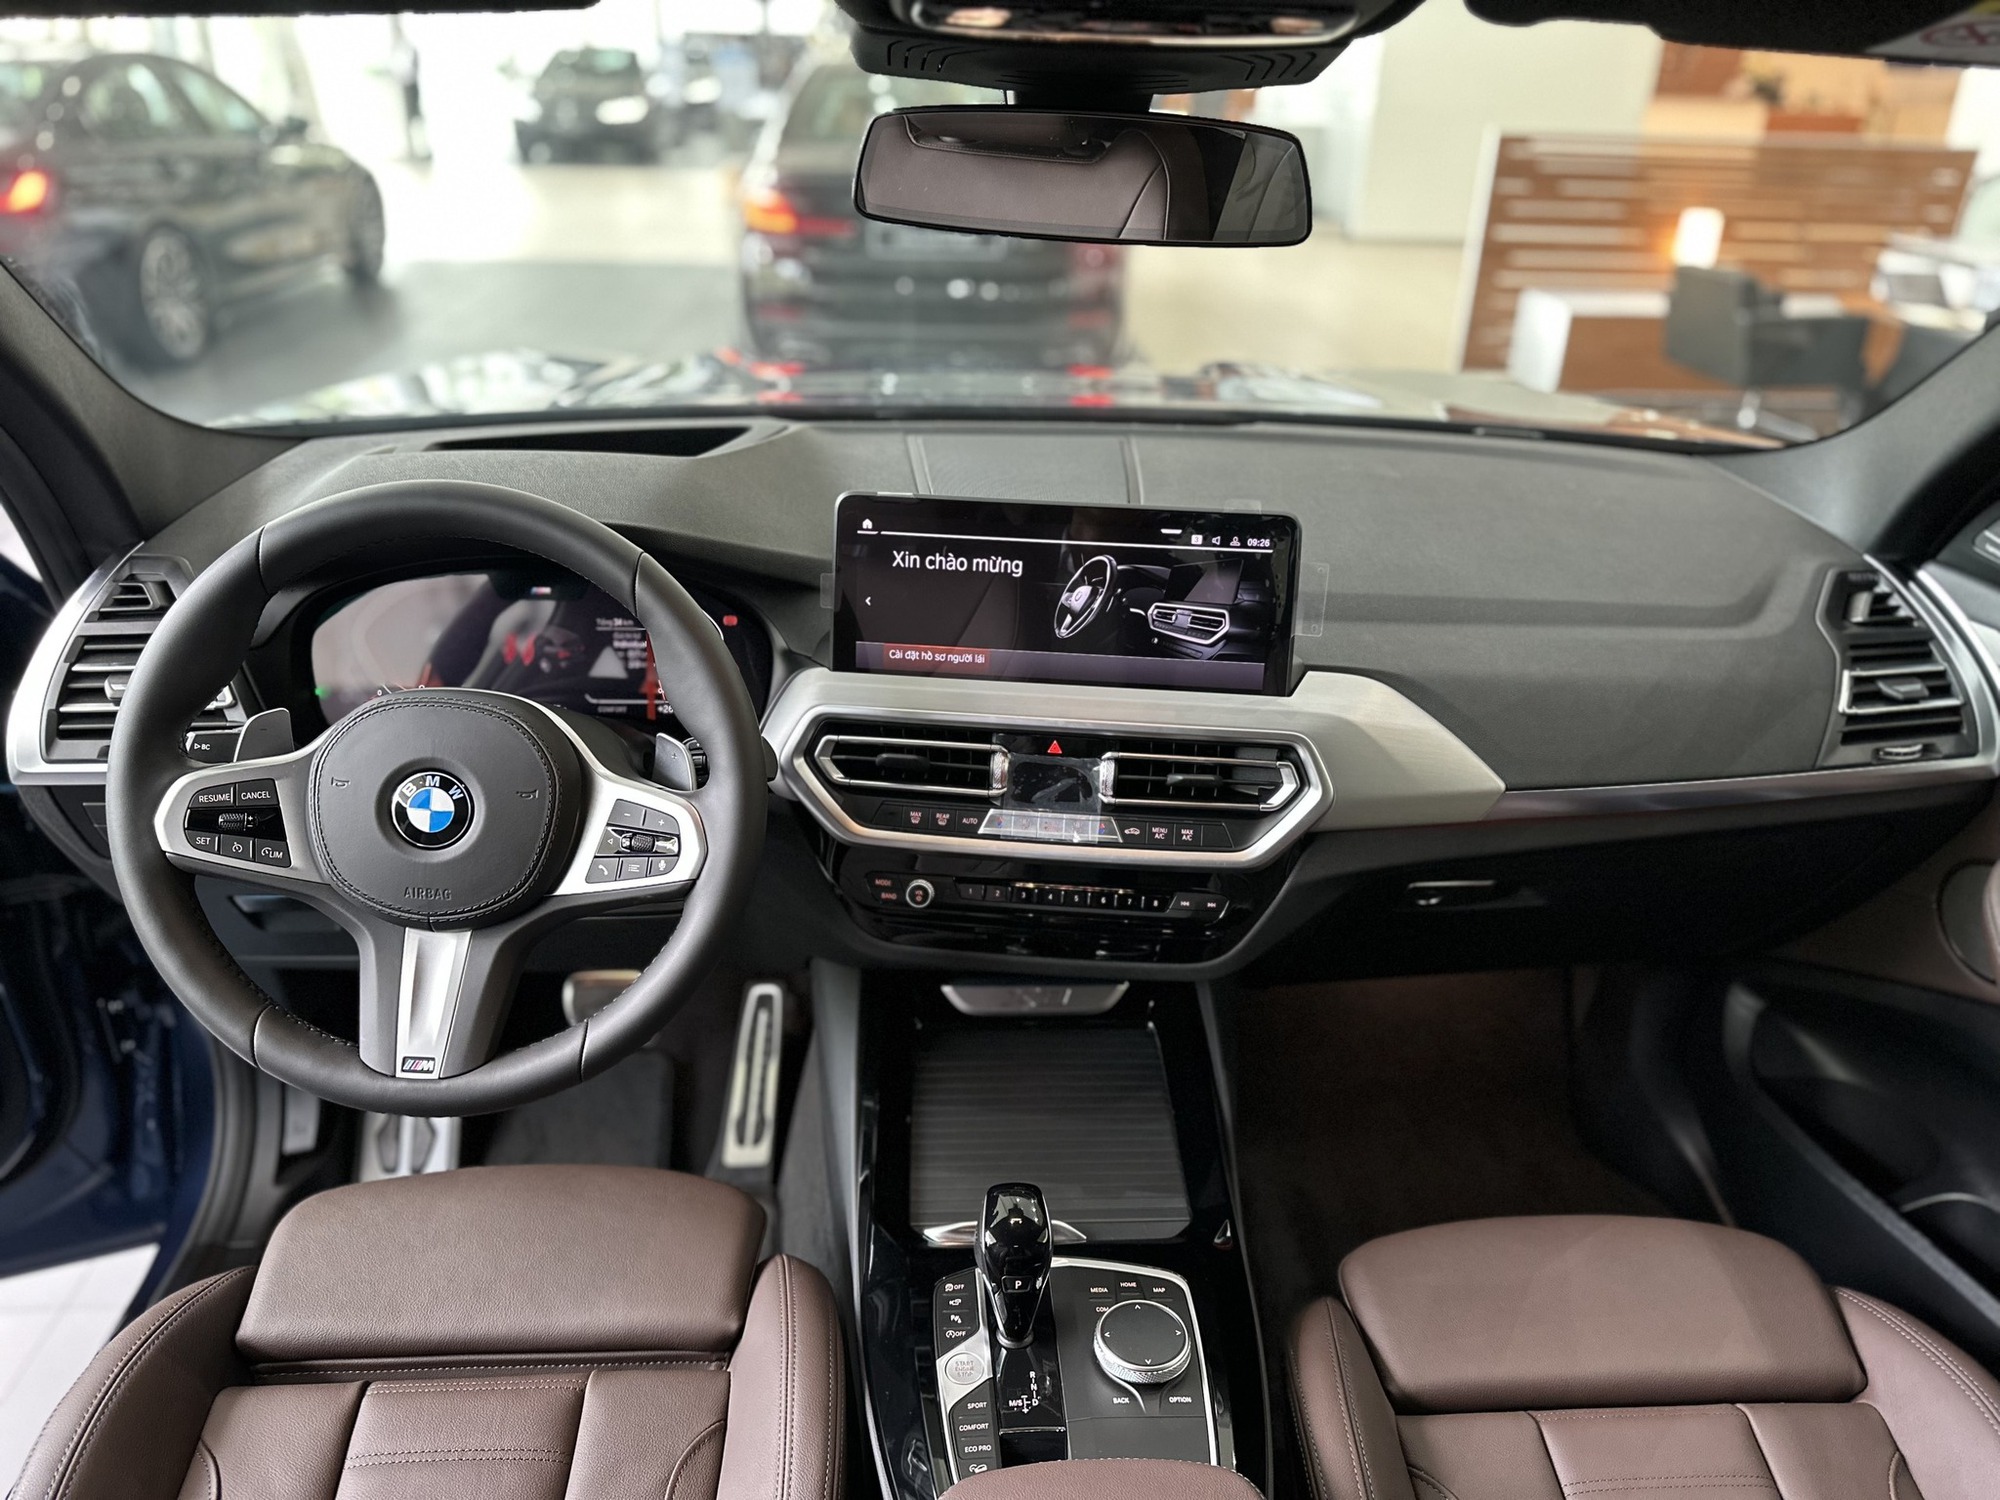 Giá BMW X3 giảm mạnh tại đại lý: Sâu nhất 110 triệu đồng, sức ép lớn cho Mercedes-Benz GLC - Ảnh 6.